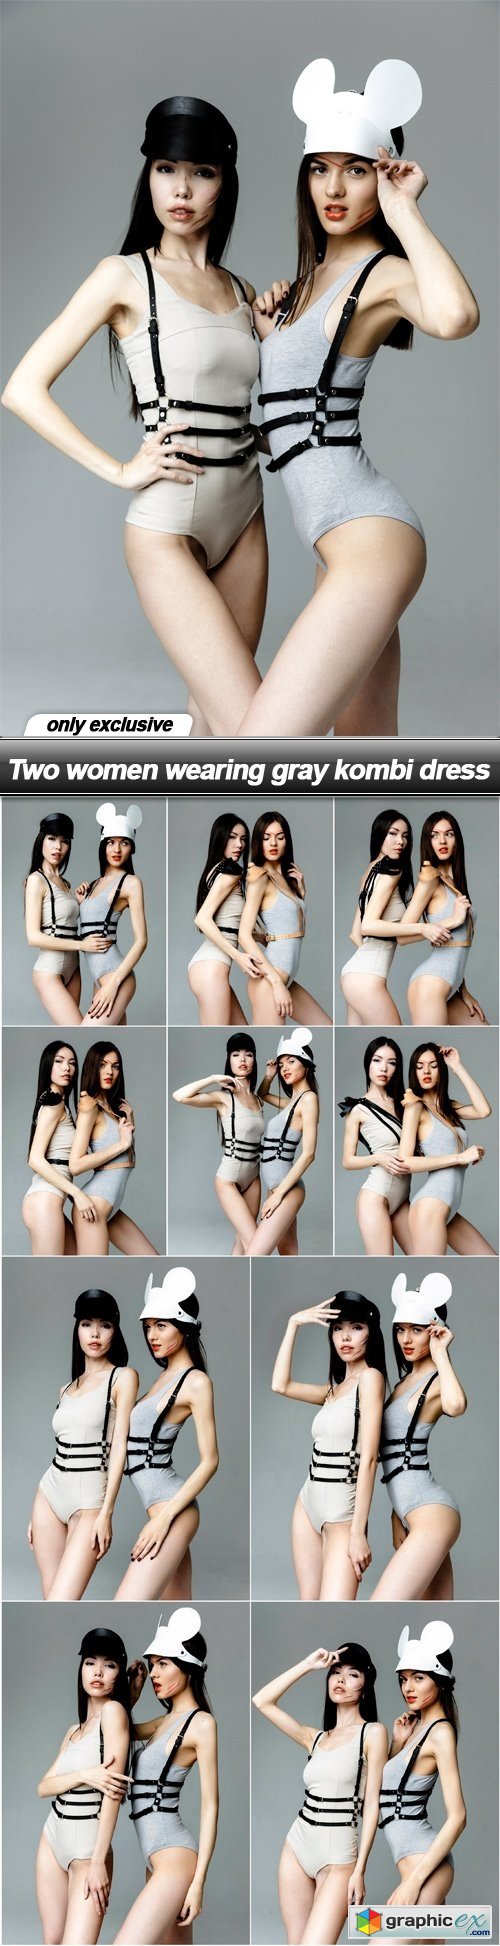 Two women wearing gray kombi dress - 11 UHQ JPEG